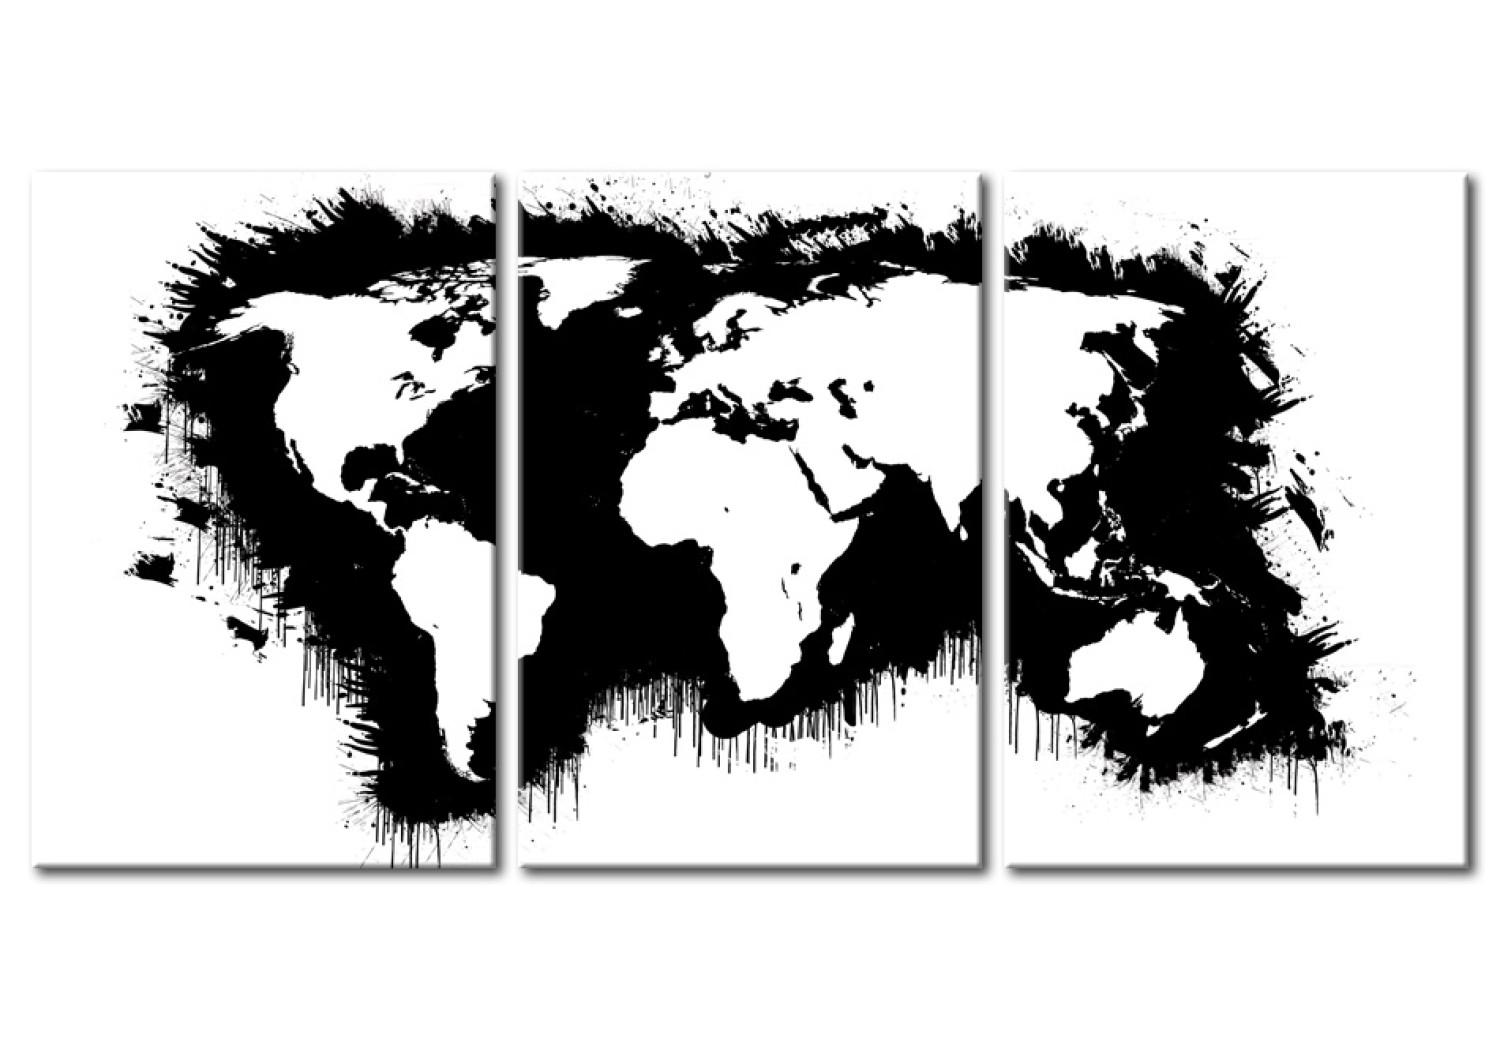 Cuadro moderno El mapa del mundo en blanco y negro